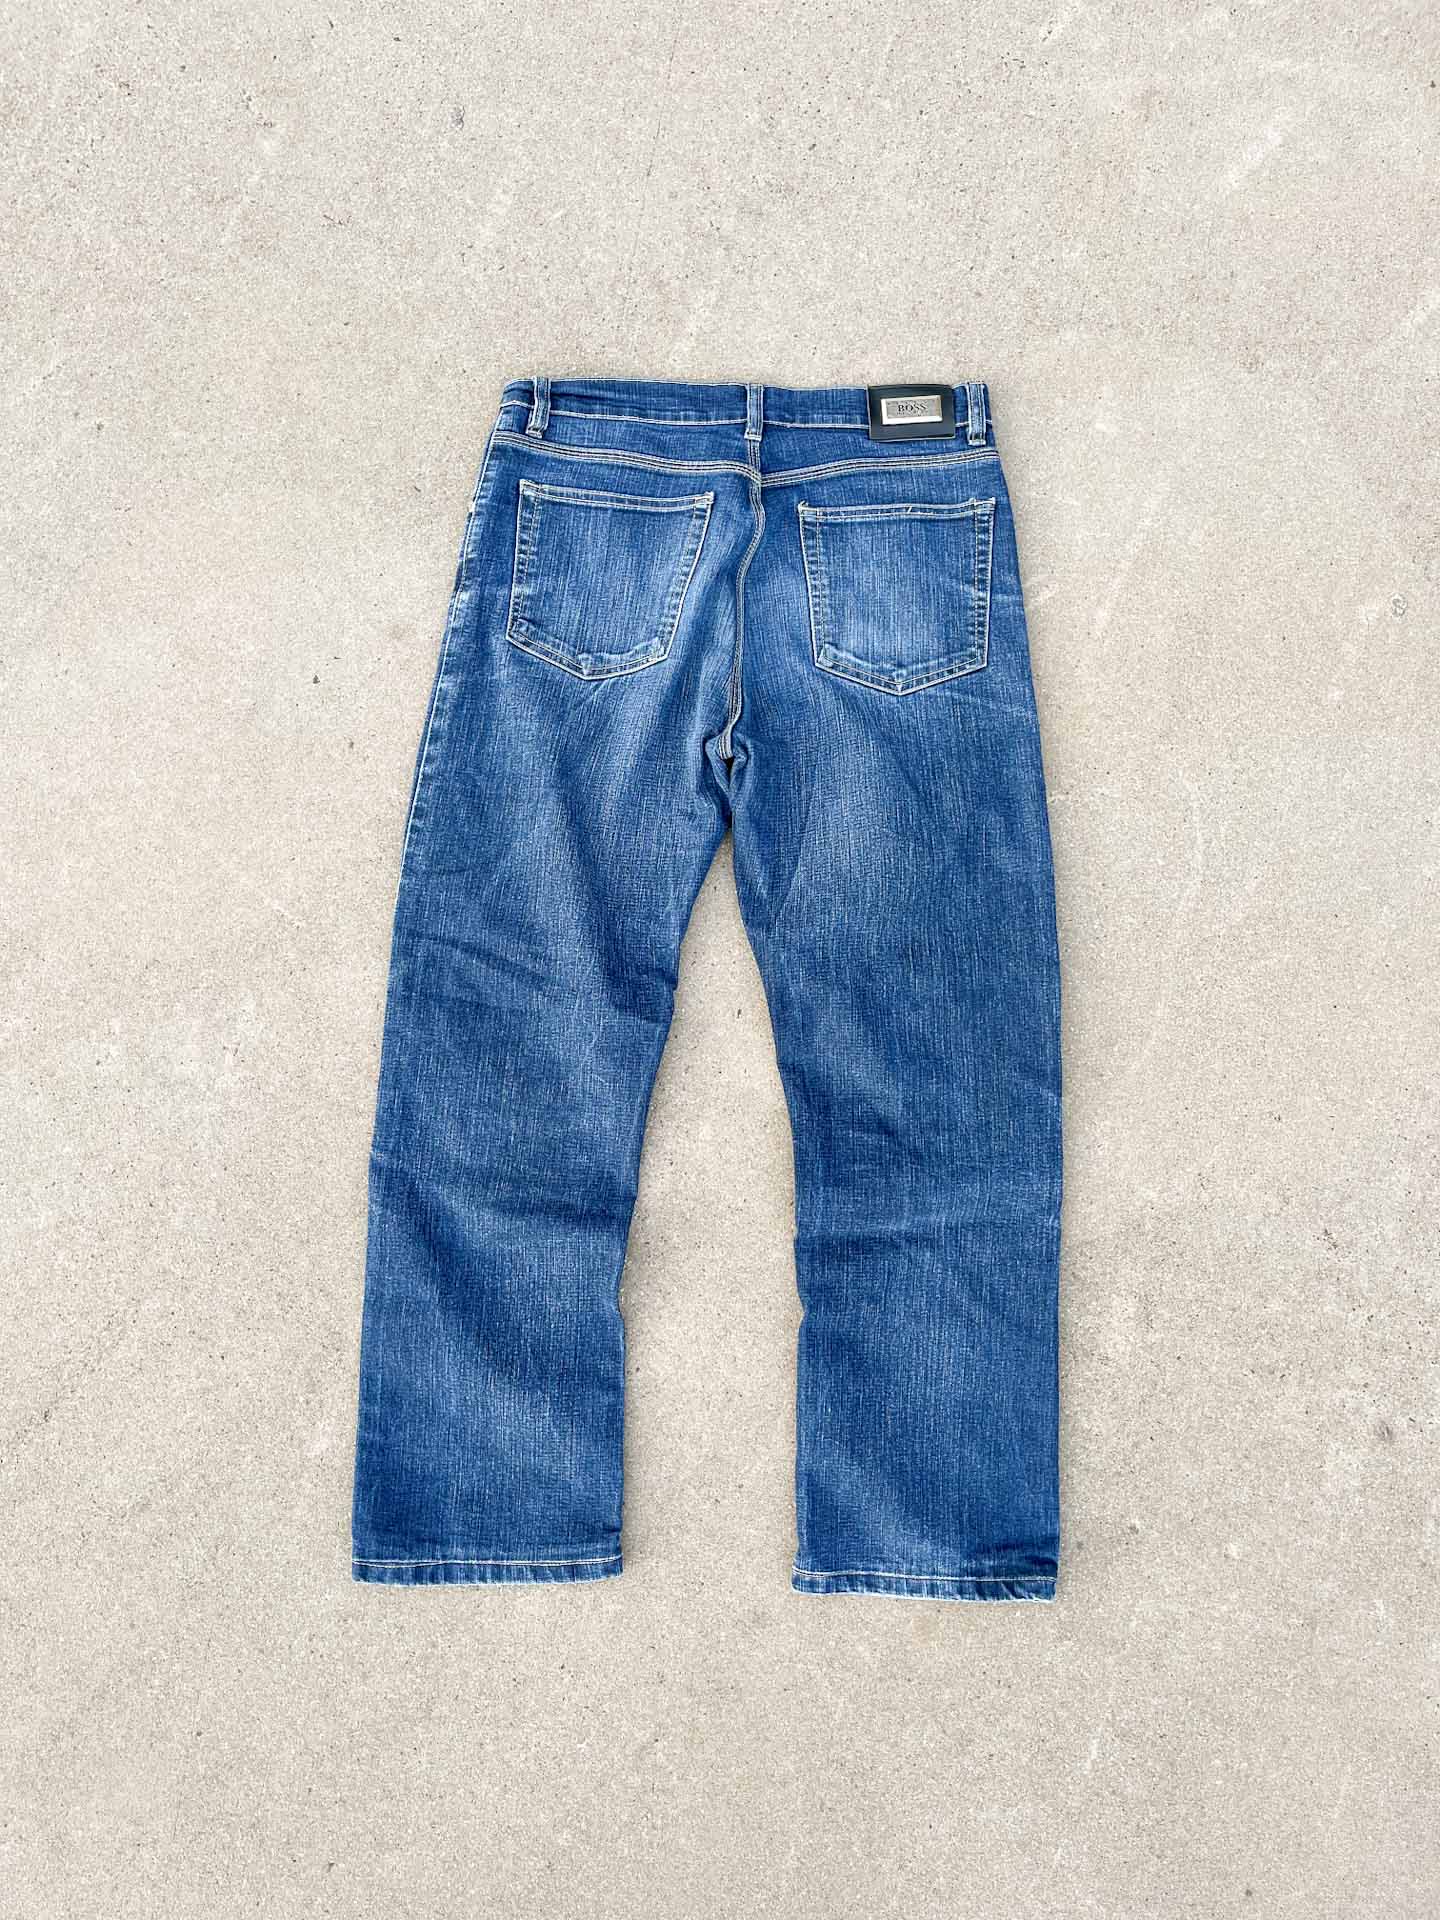 Hugo Boss denim jeans